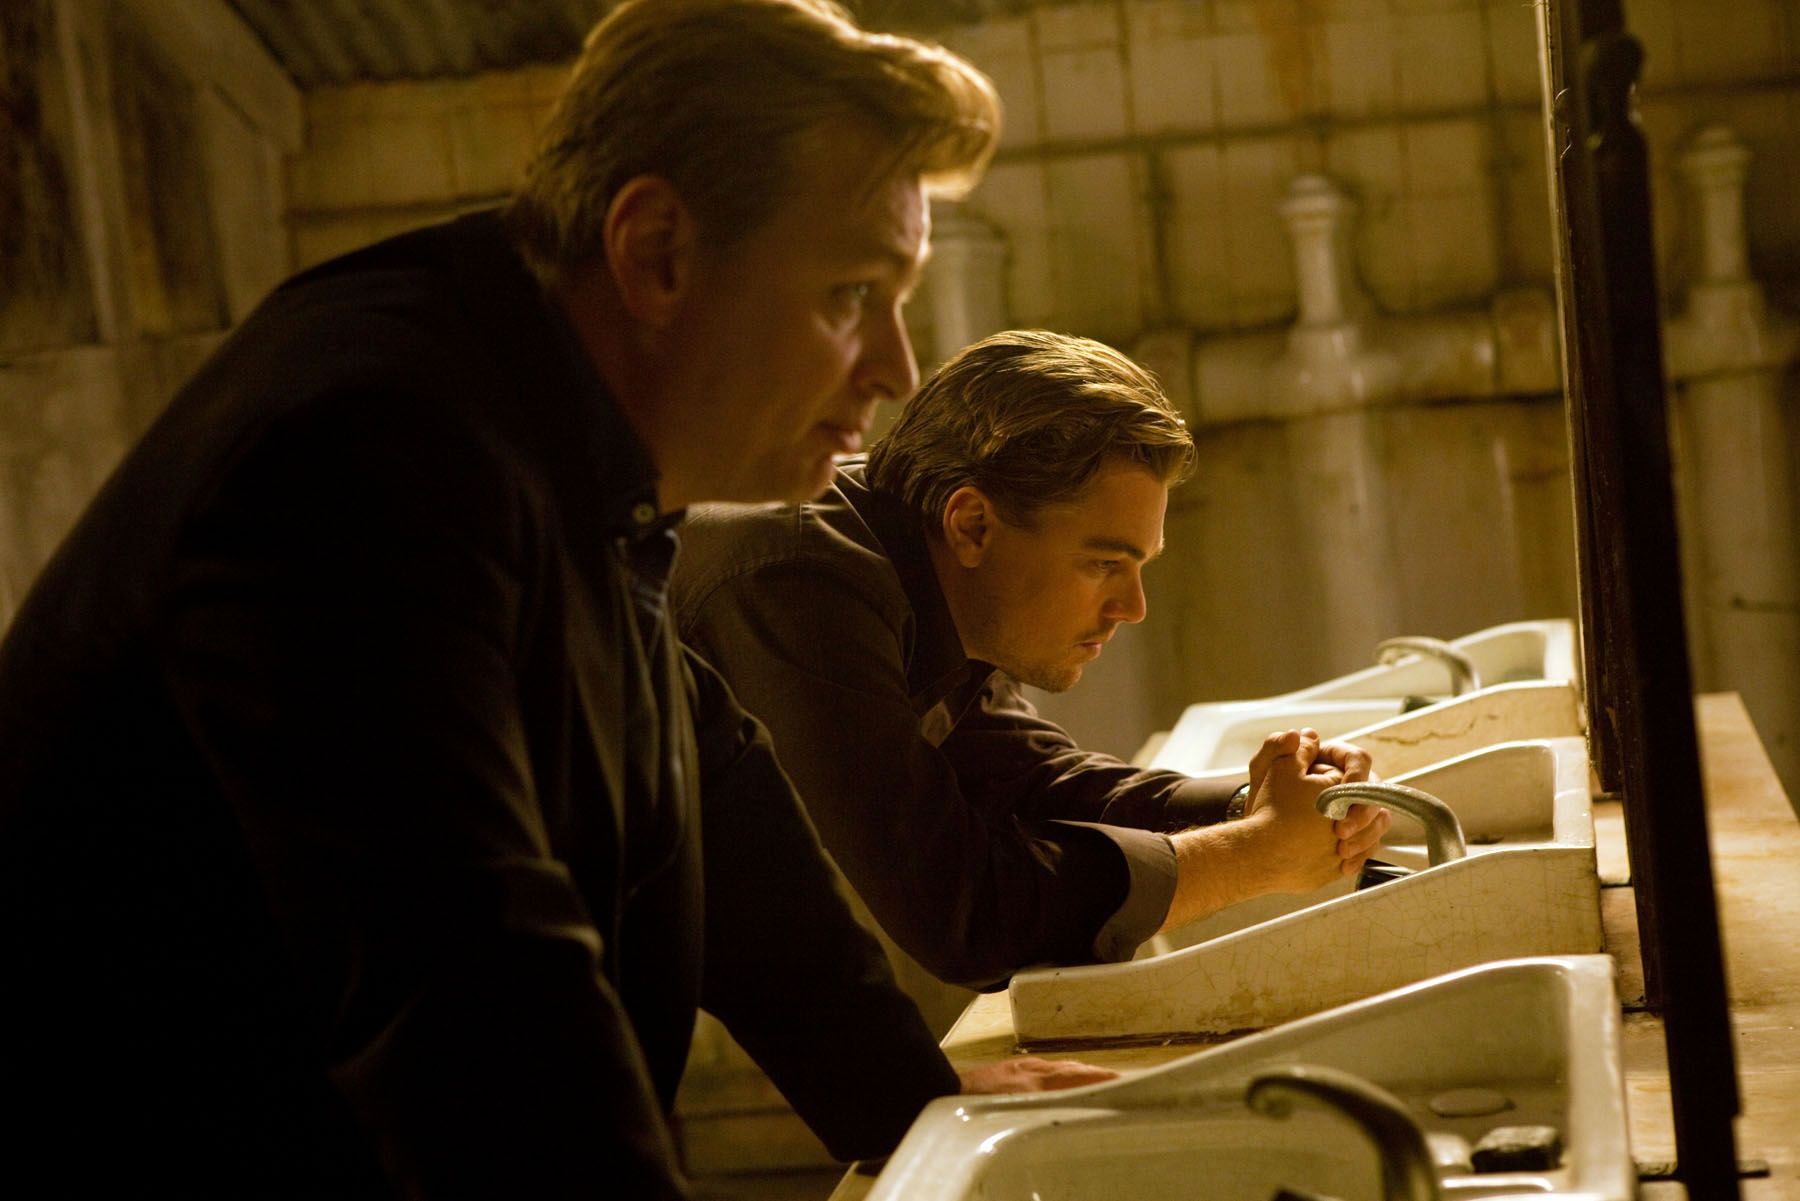 Leonardo DiCaprio and Christopher Nolan